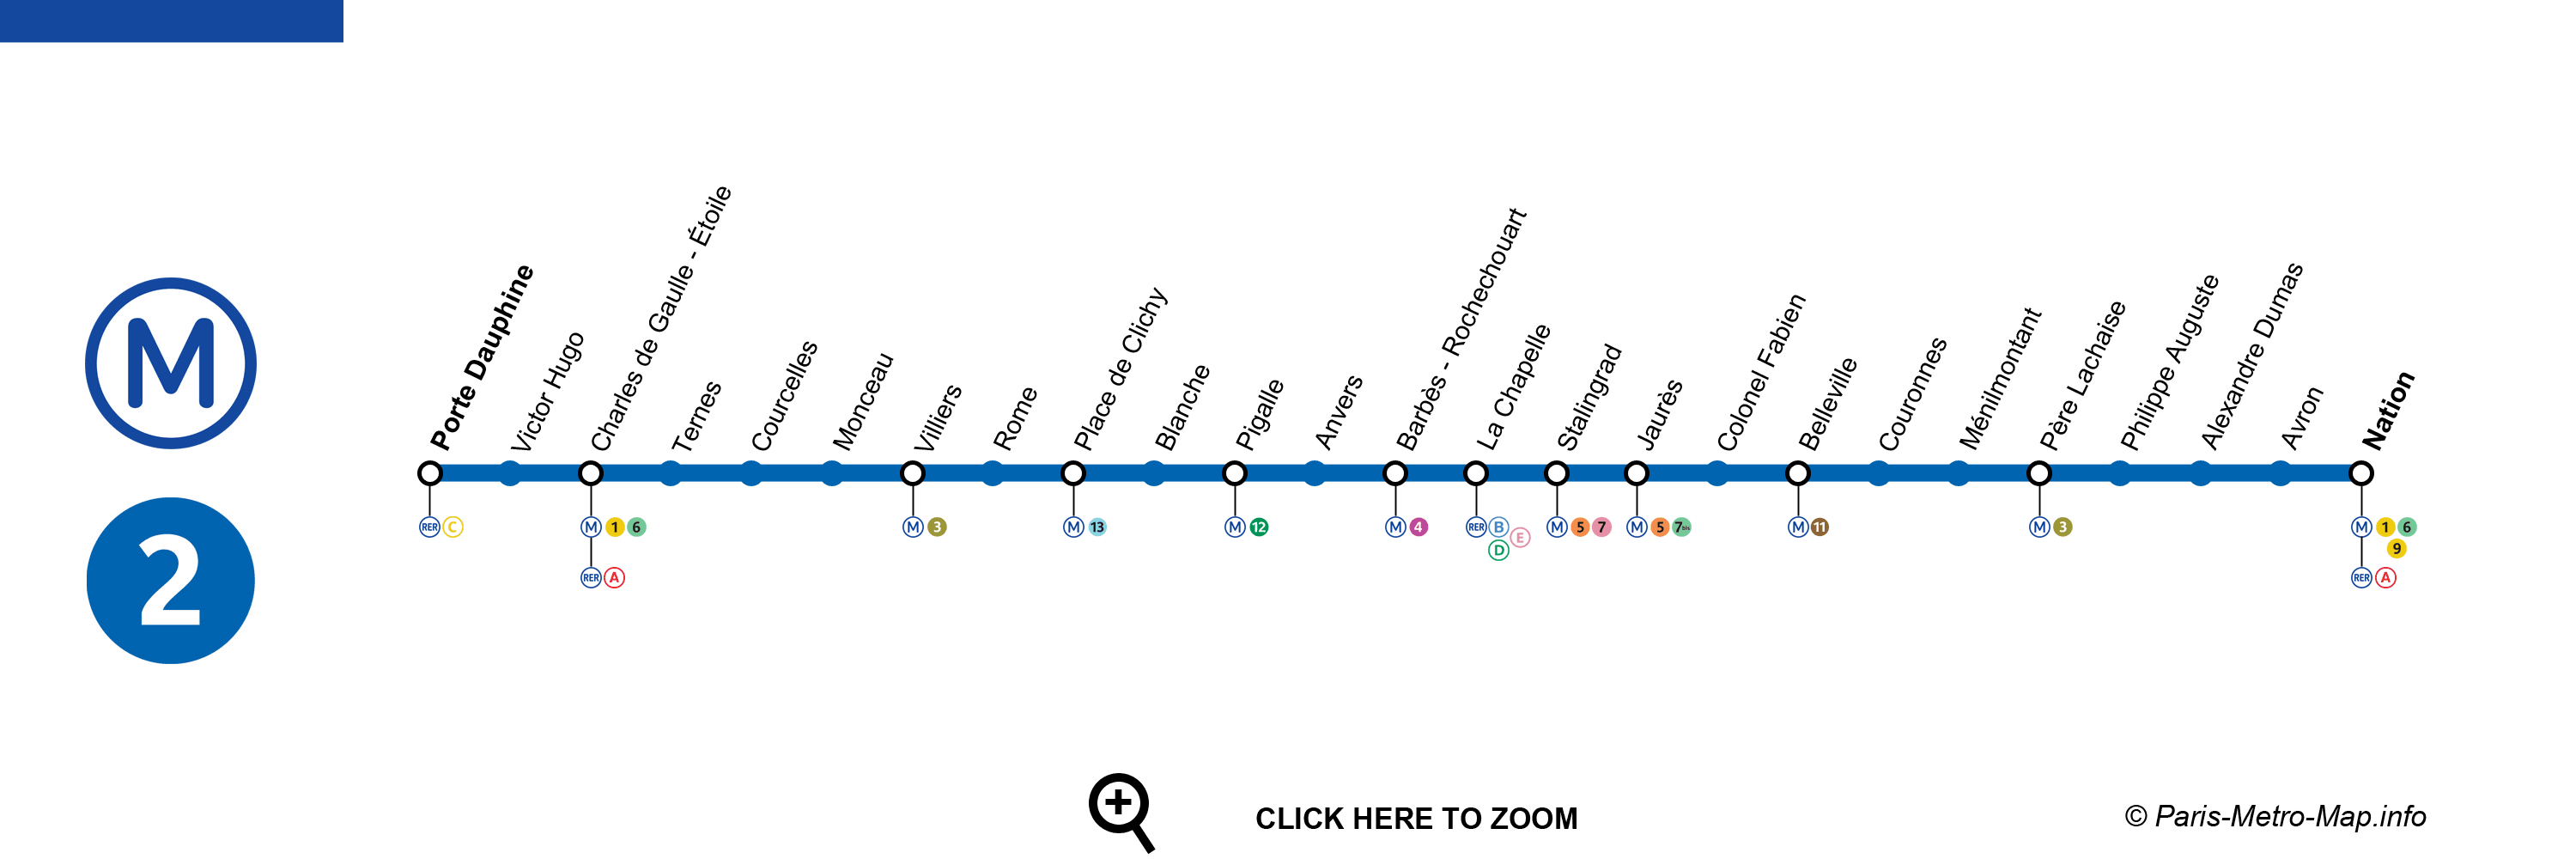 Plan Metro 2 Paris 